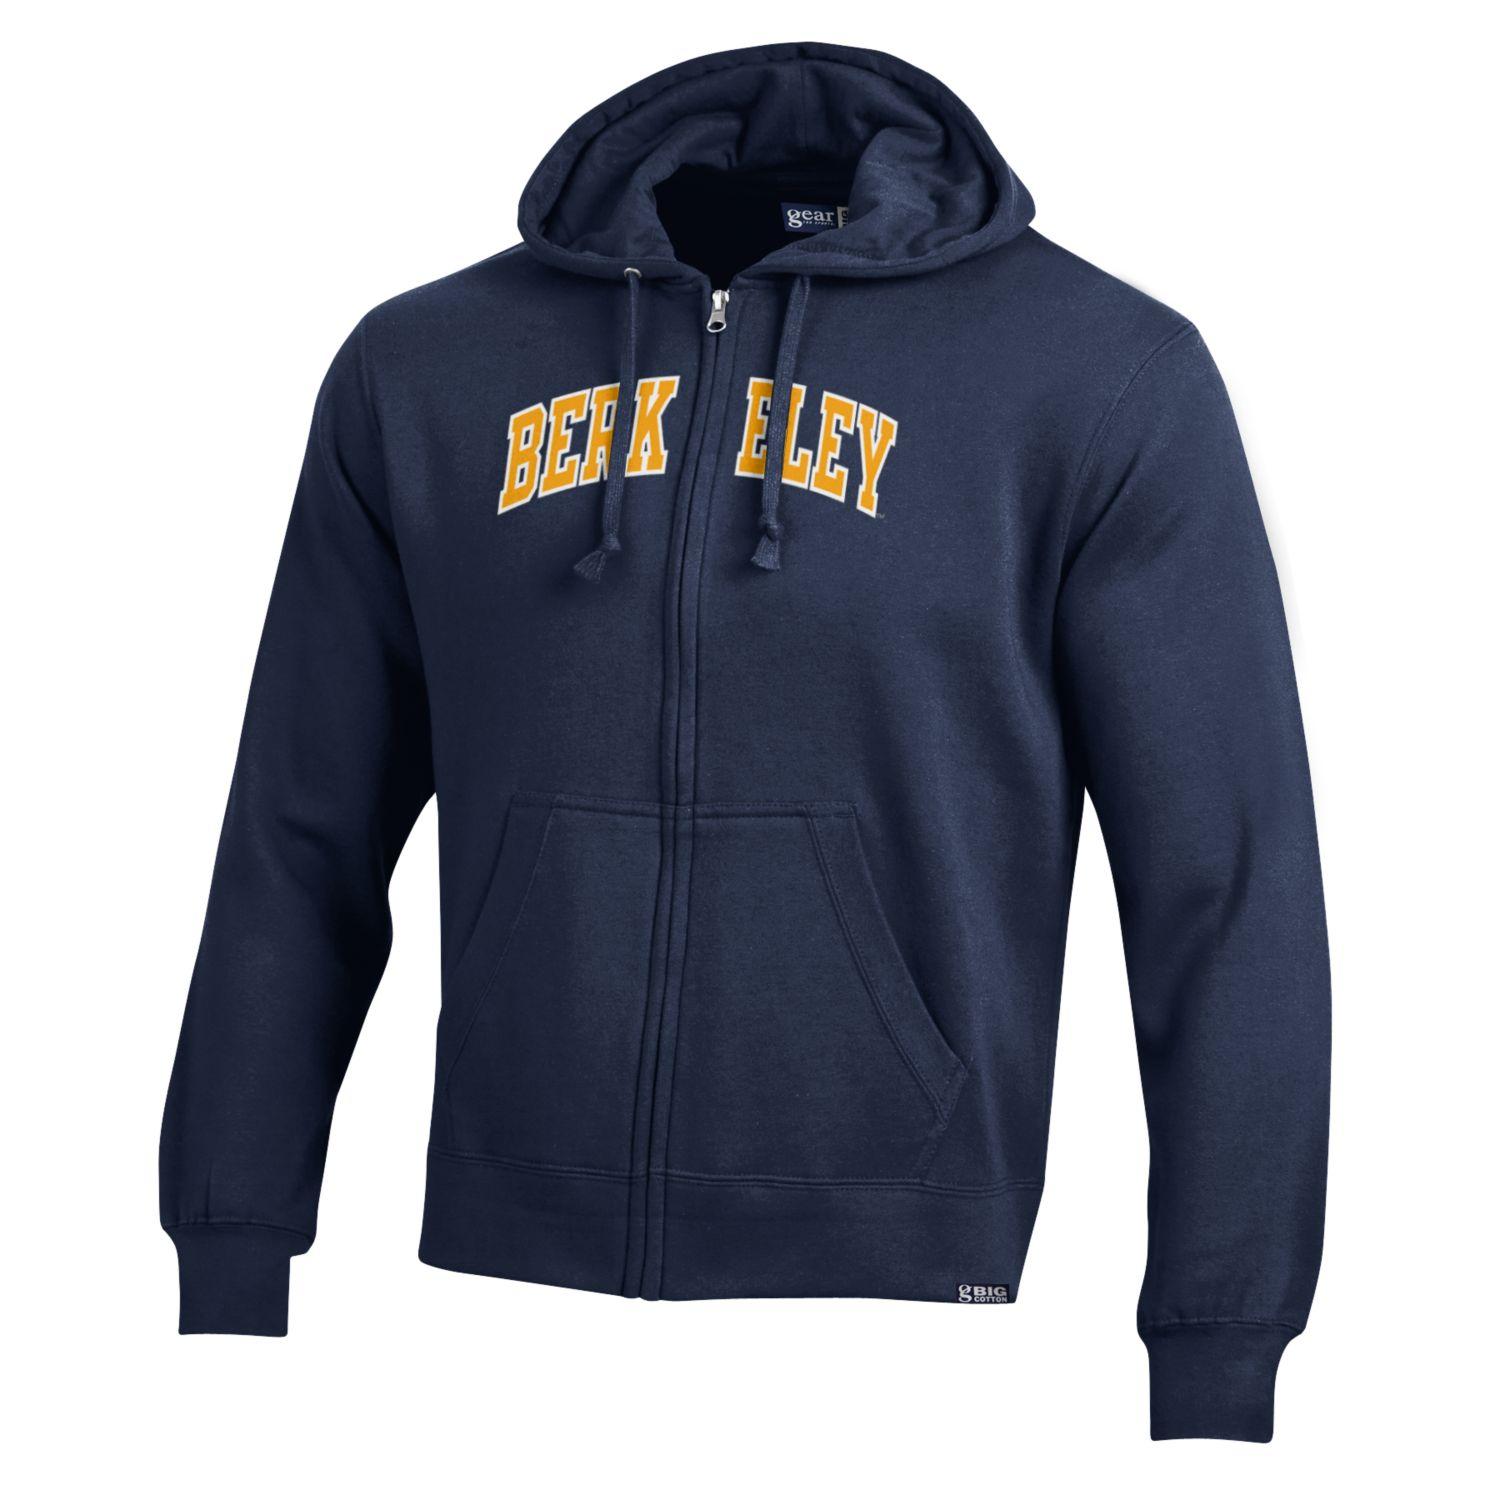 U.C. Berkeley arch double applique cotton rich zip-up hoodie sweatshirt-Navy-Shop College Wear